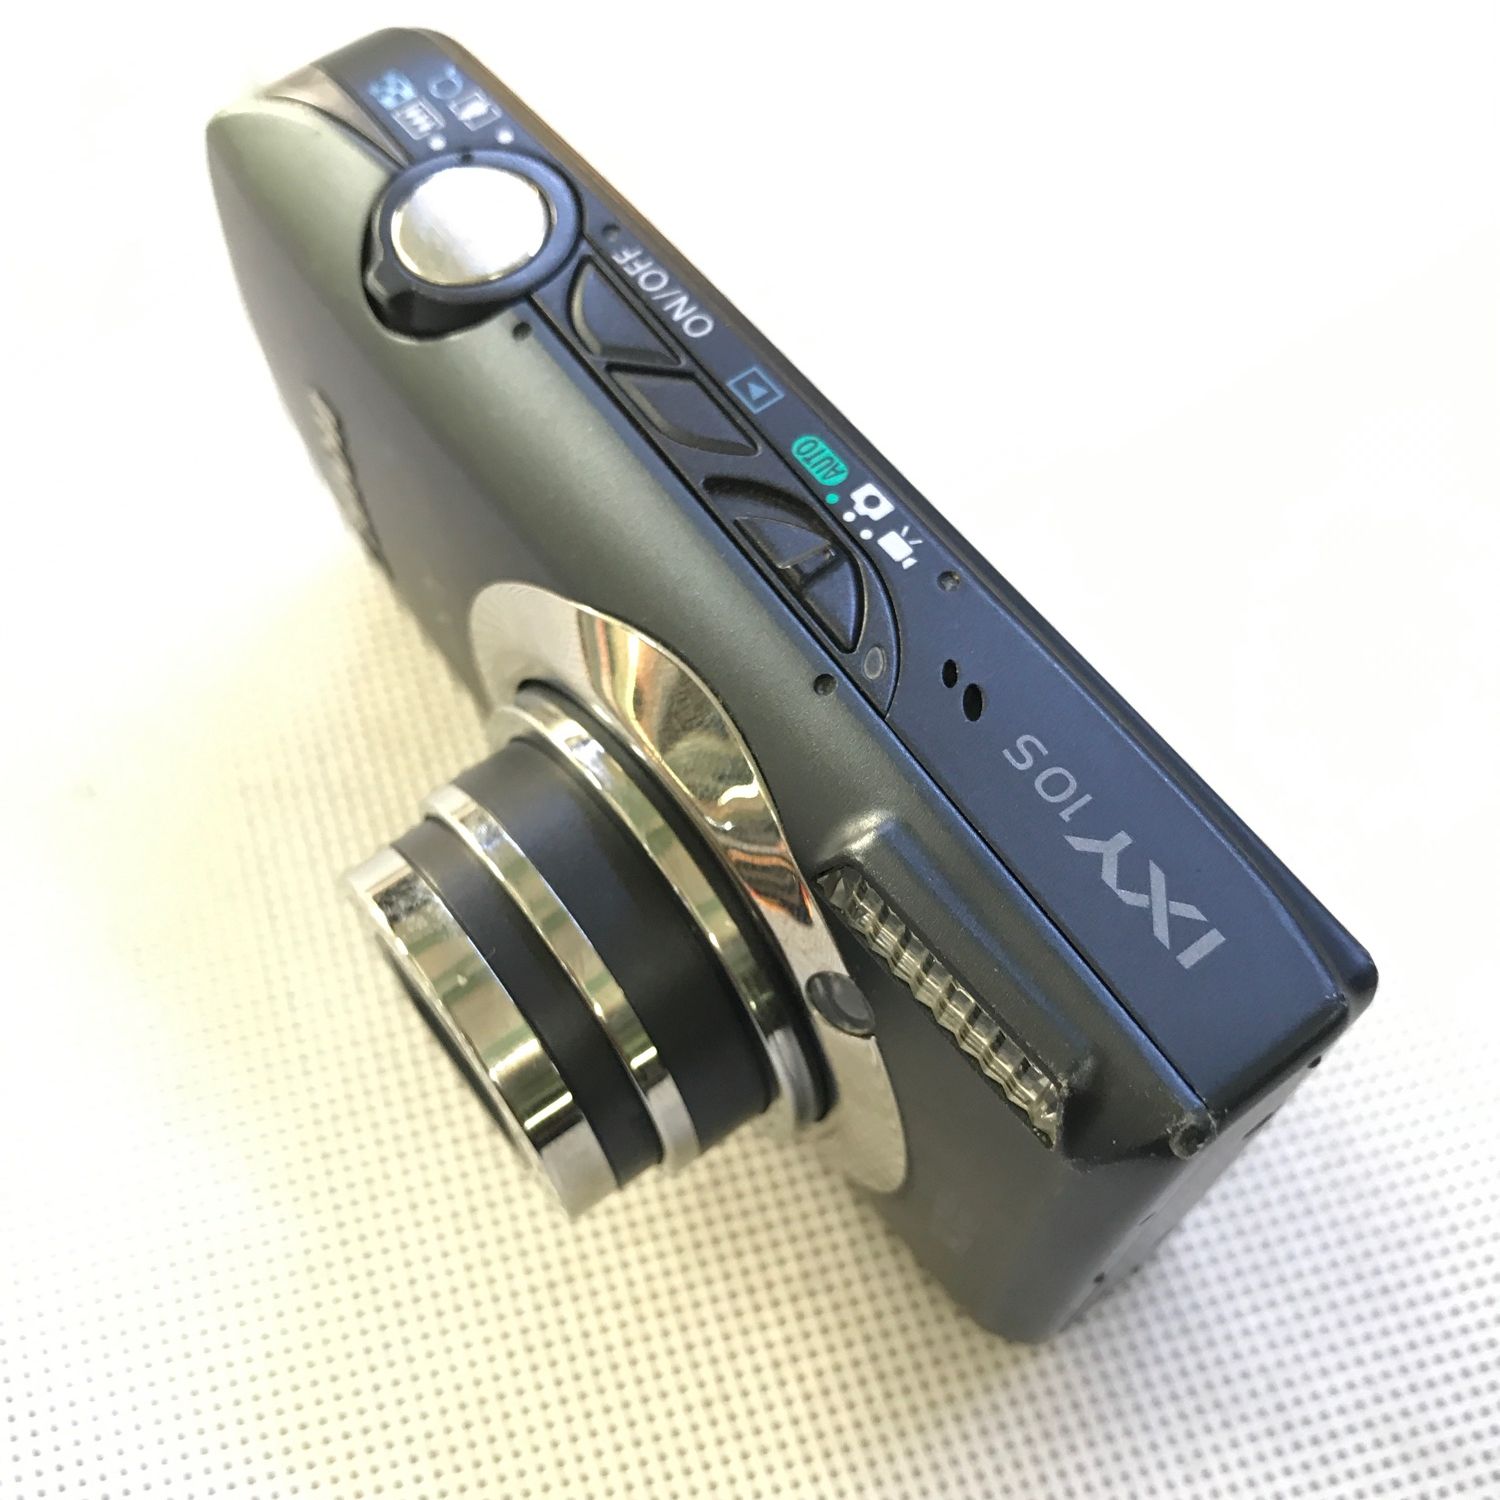 Máy Ảnh Canon Ixy 10S Phân Giải 14.1 Megapixels Màn Hình Cảm Ứng Sắc Nét -  Mixasale